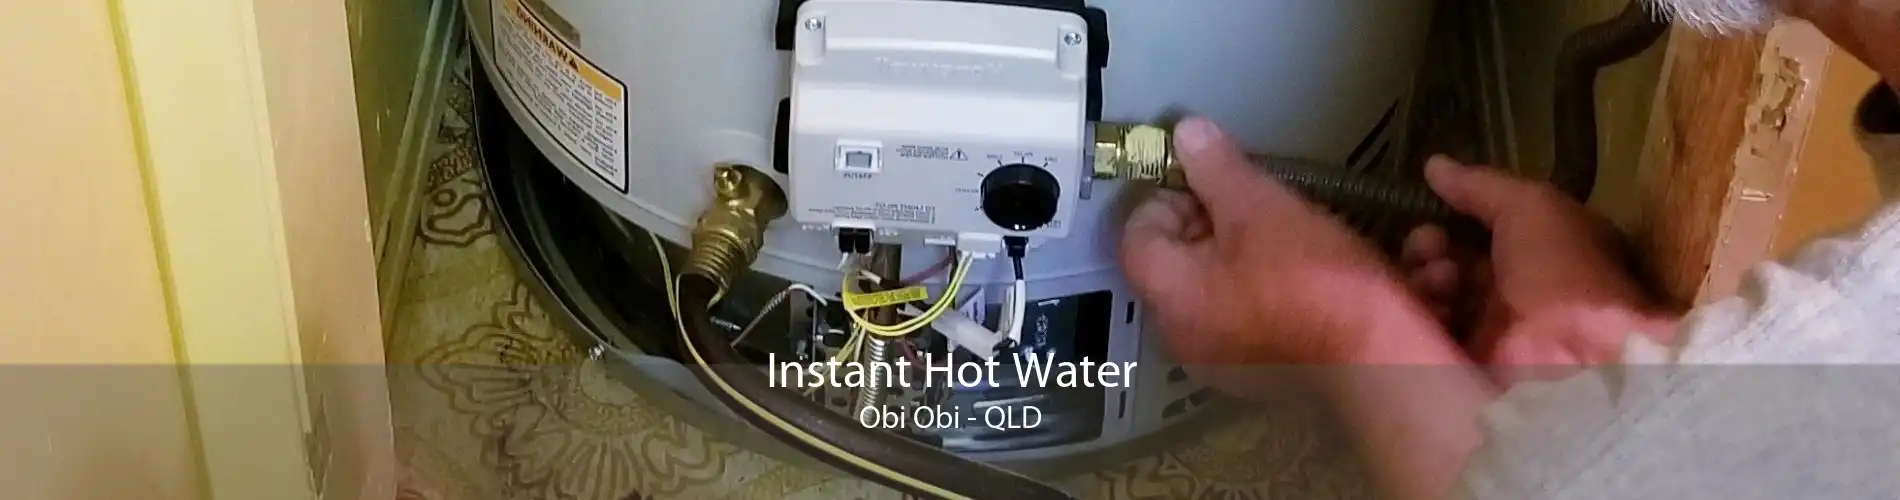 Instant Hot Water Obi Obi - QLD